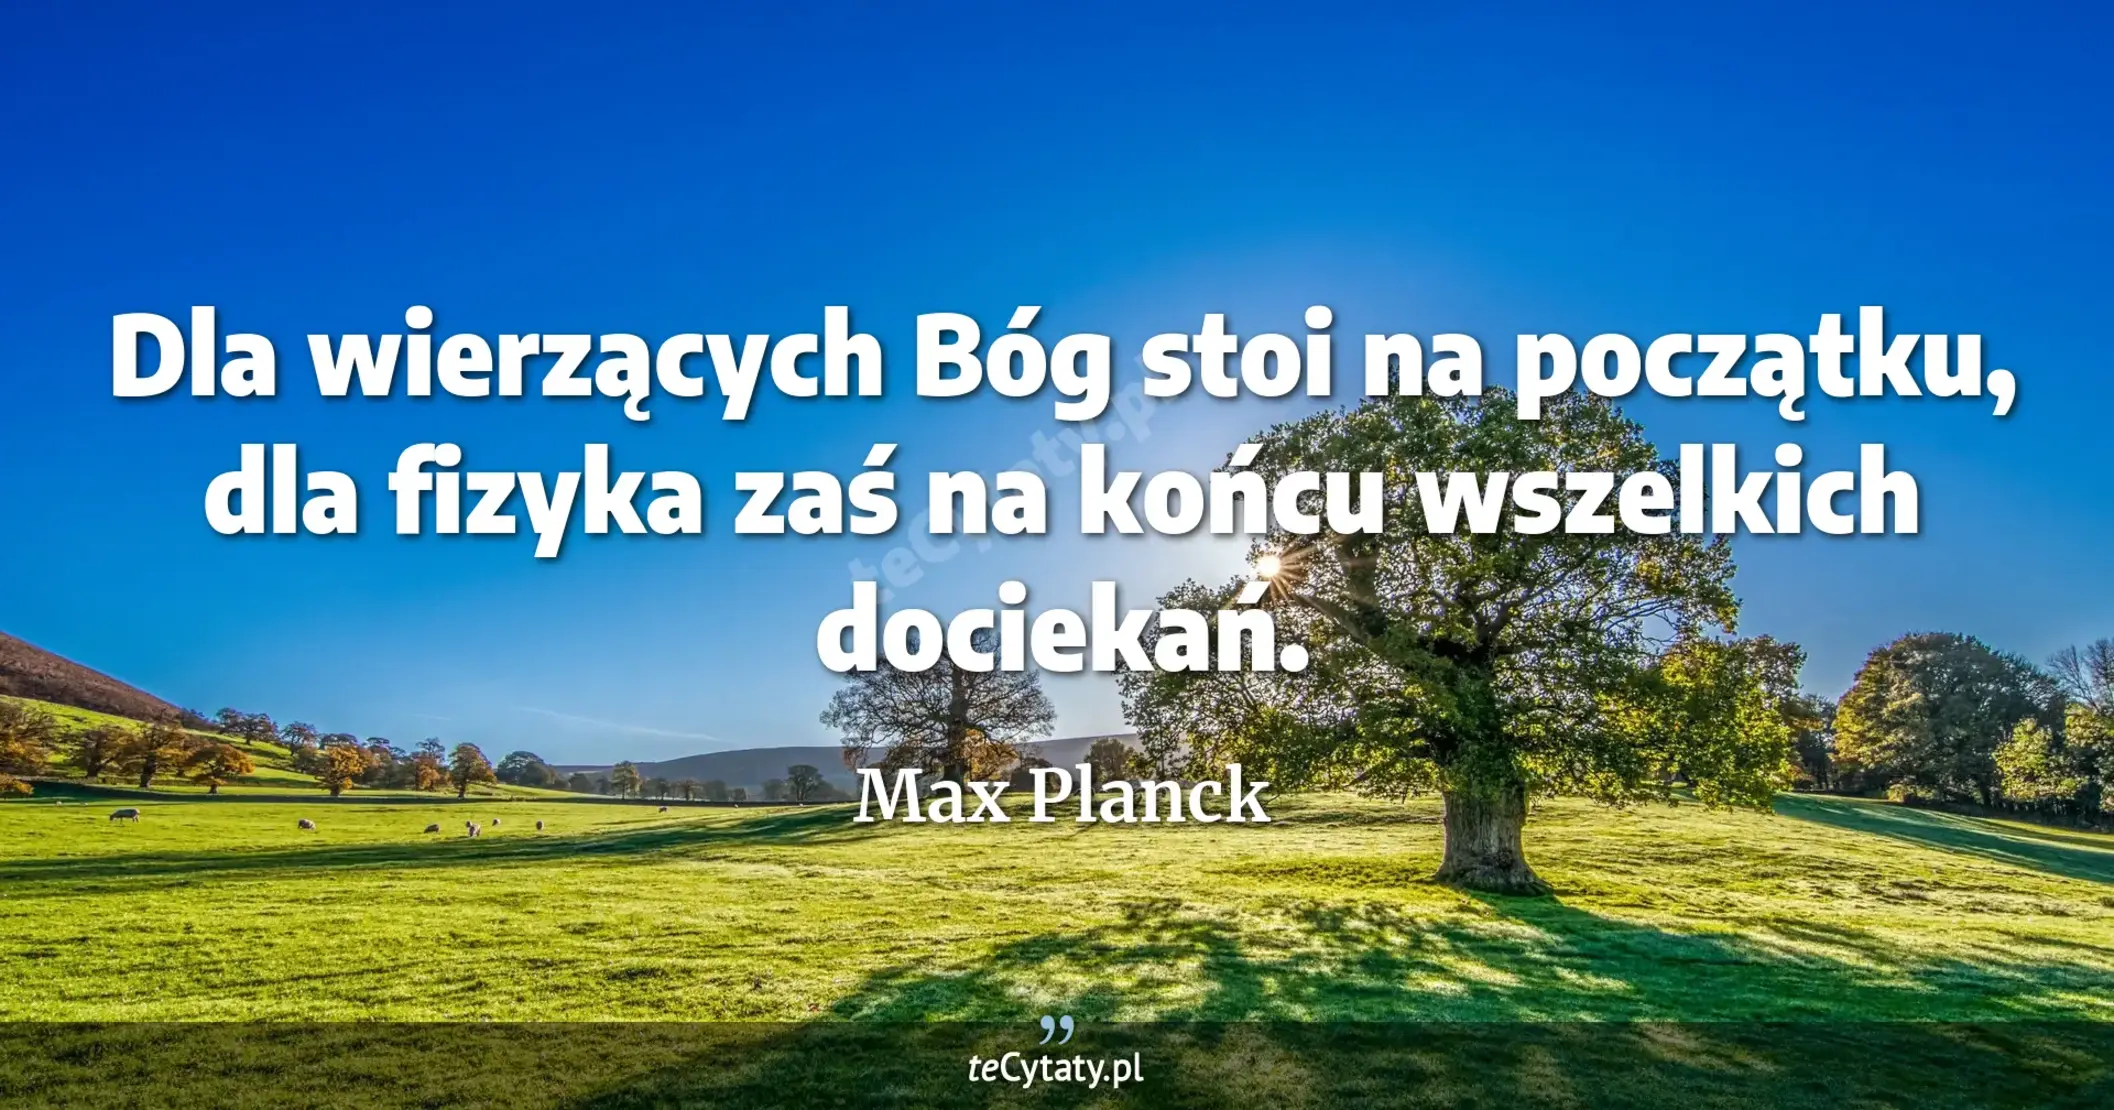 Dla wierzących Bóg stoi na początku, dla fizyka zaś na końcu wszelkich dociekań. - Max Planck